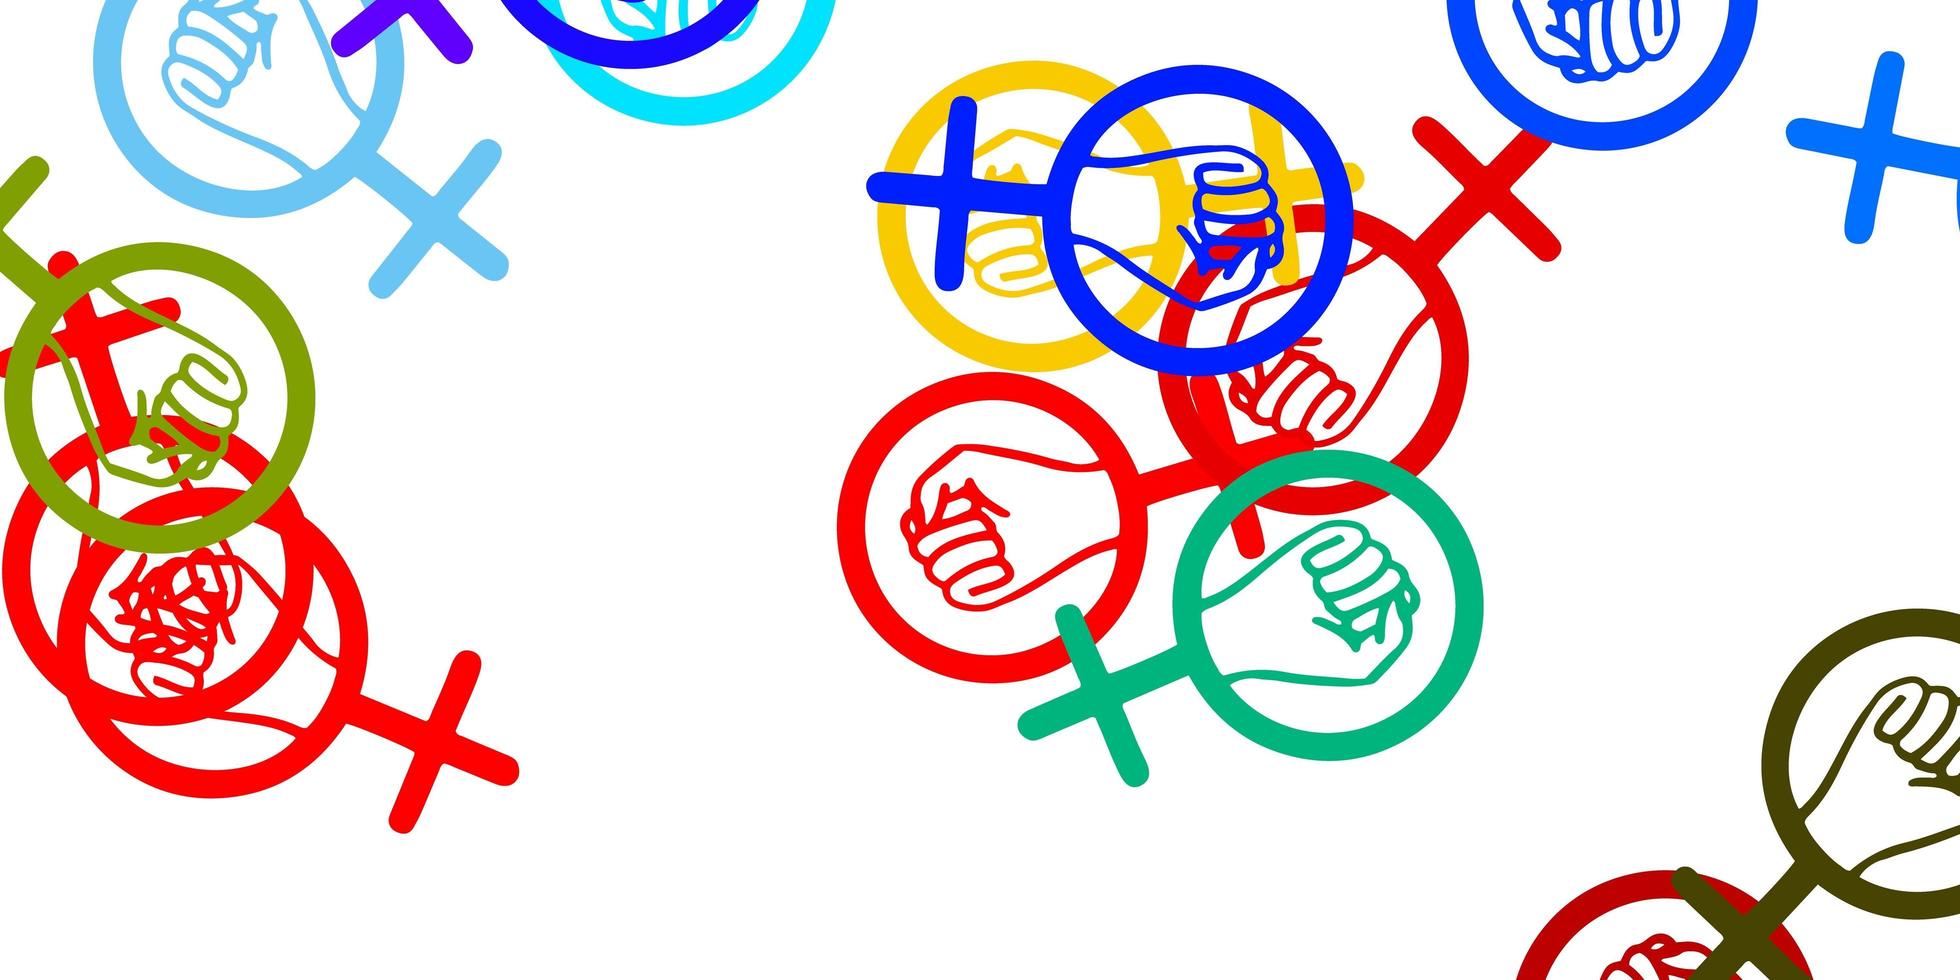 trama vettoriale multicolore leggera con simboli dei diritti delle donne.